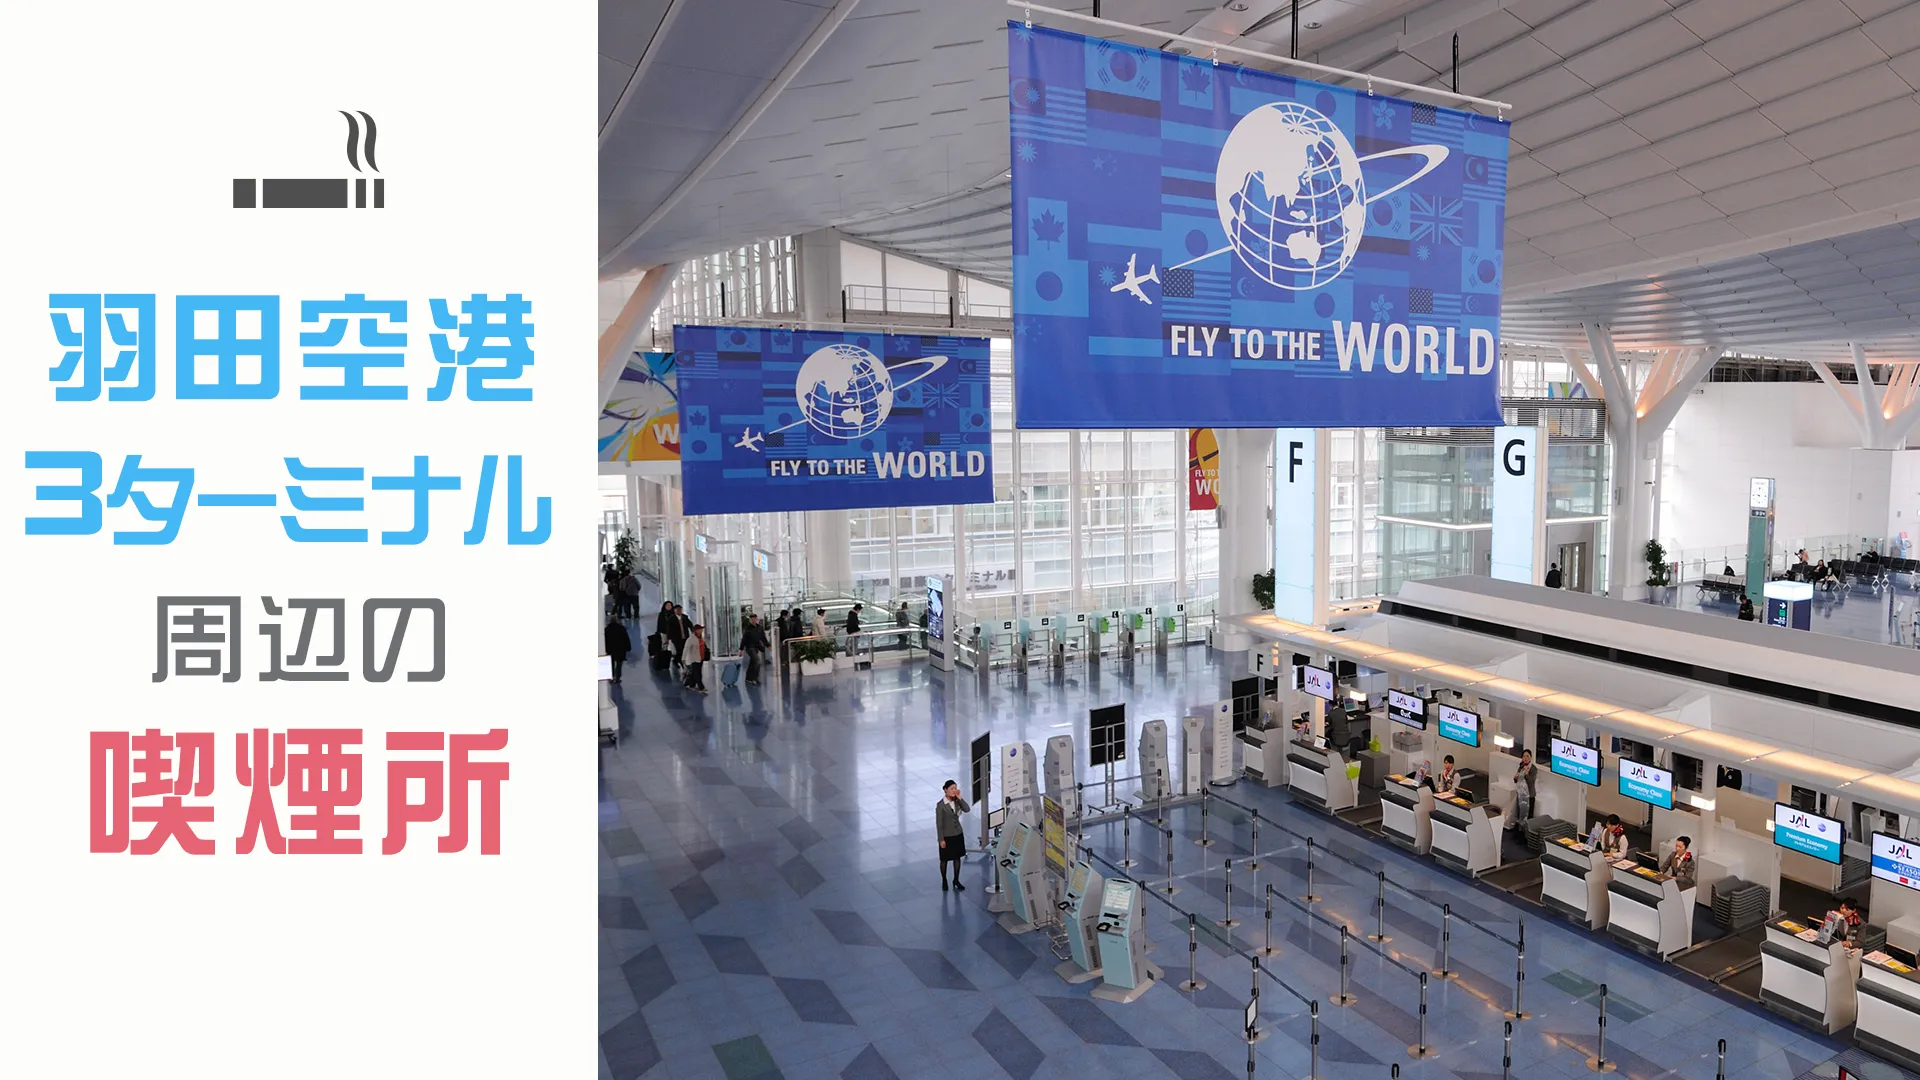 【2022年3月版】羽田空港第3ターミナル駅の喫煙所を紹介